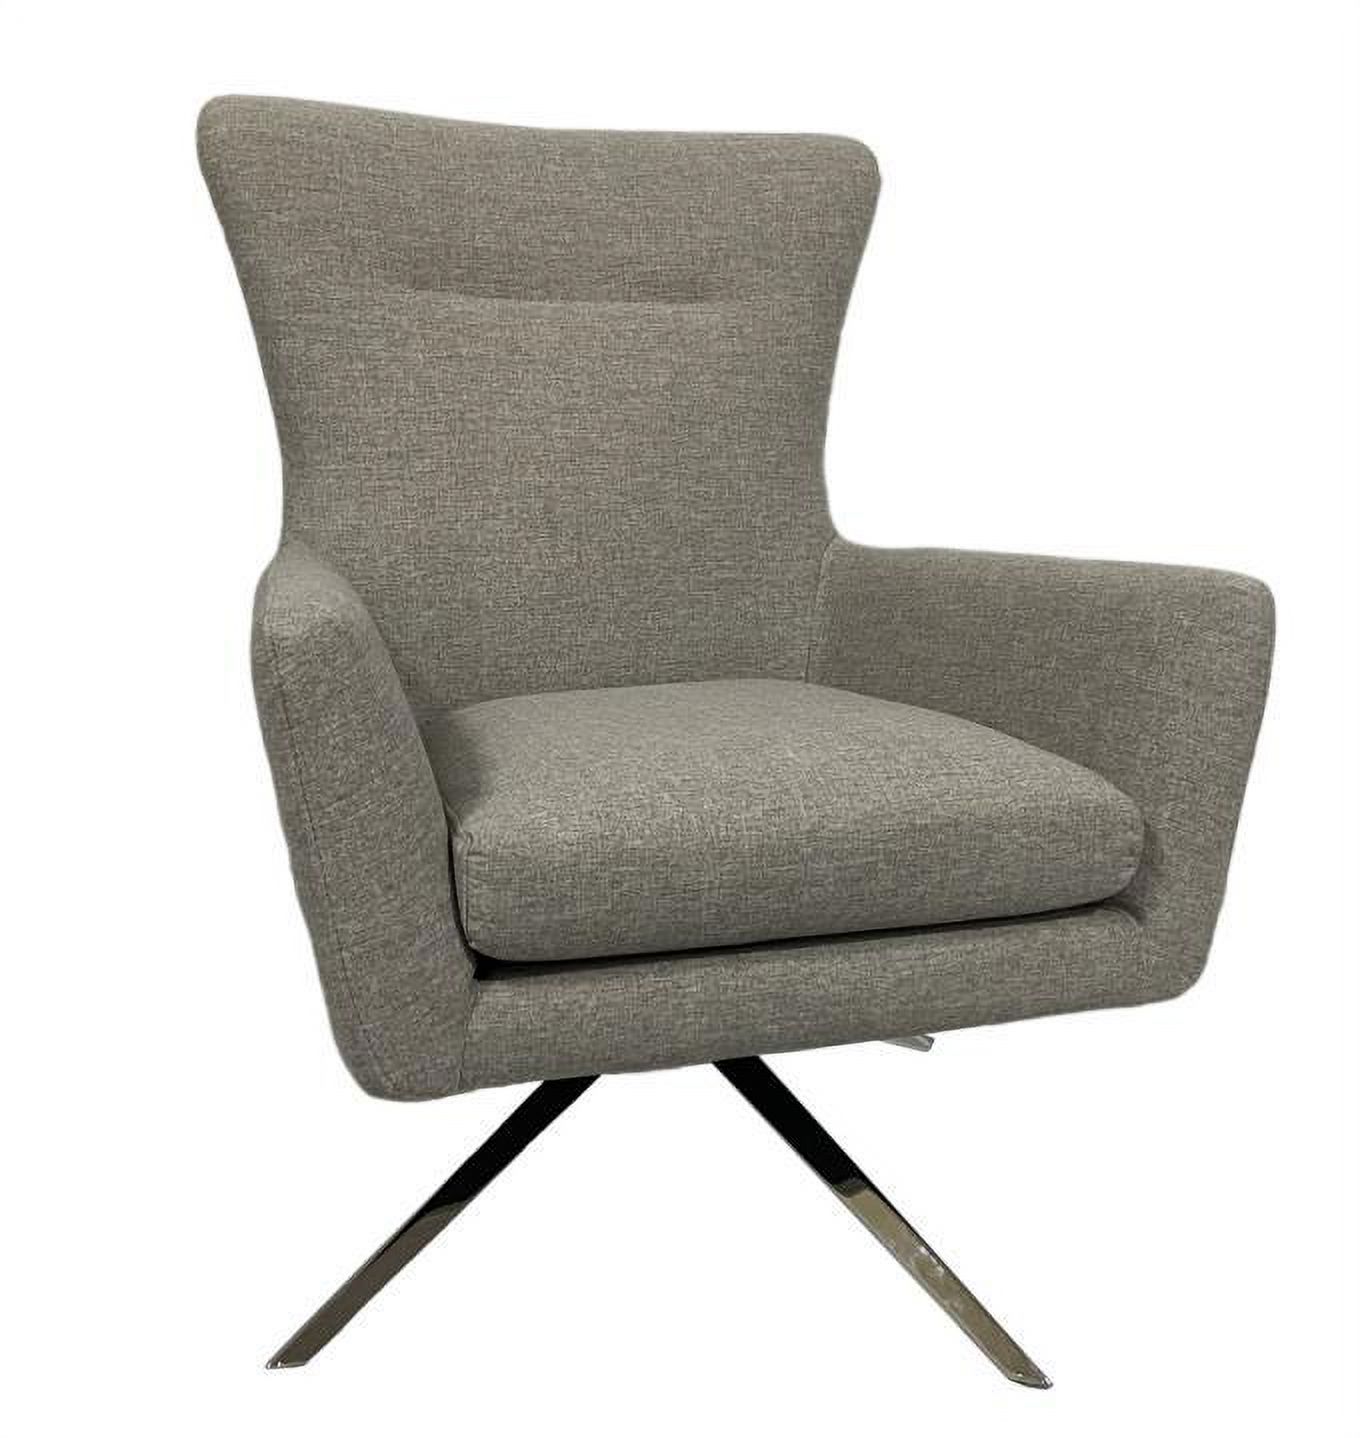 UBesGoo Modern Style Comfortable Swivel Lounge Chair - image 1 of 7